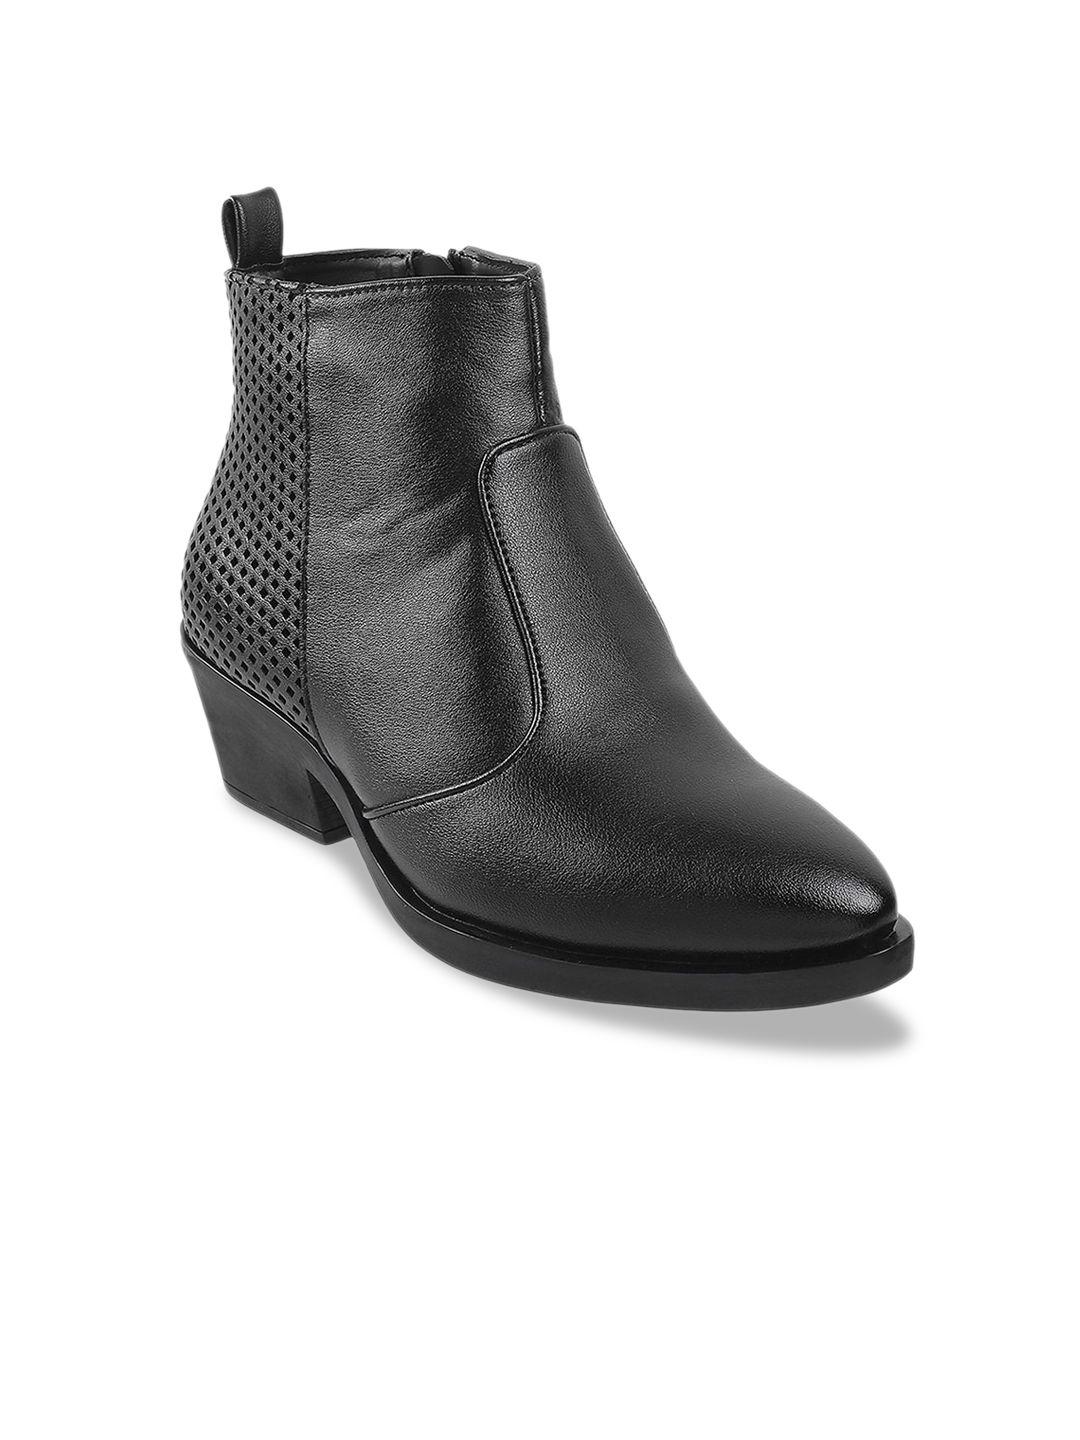 metro-women-black-suede-block-heeled-boots